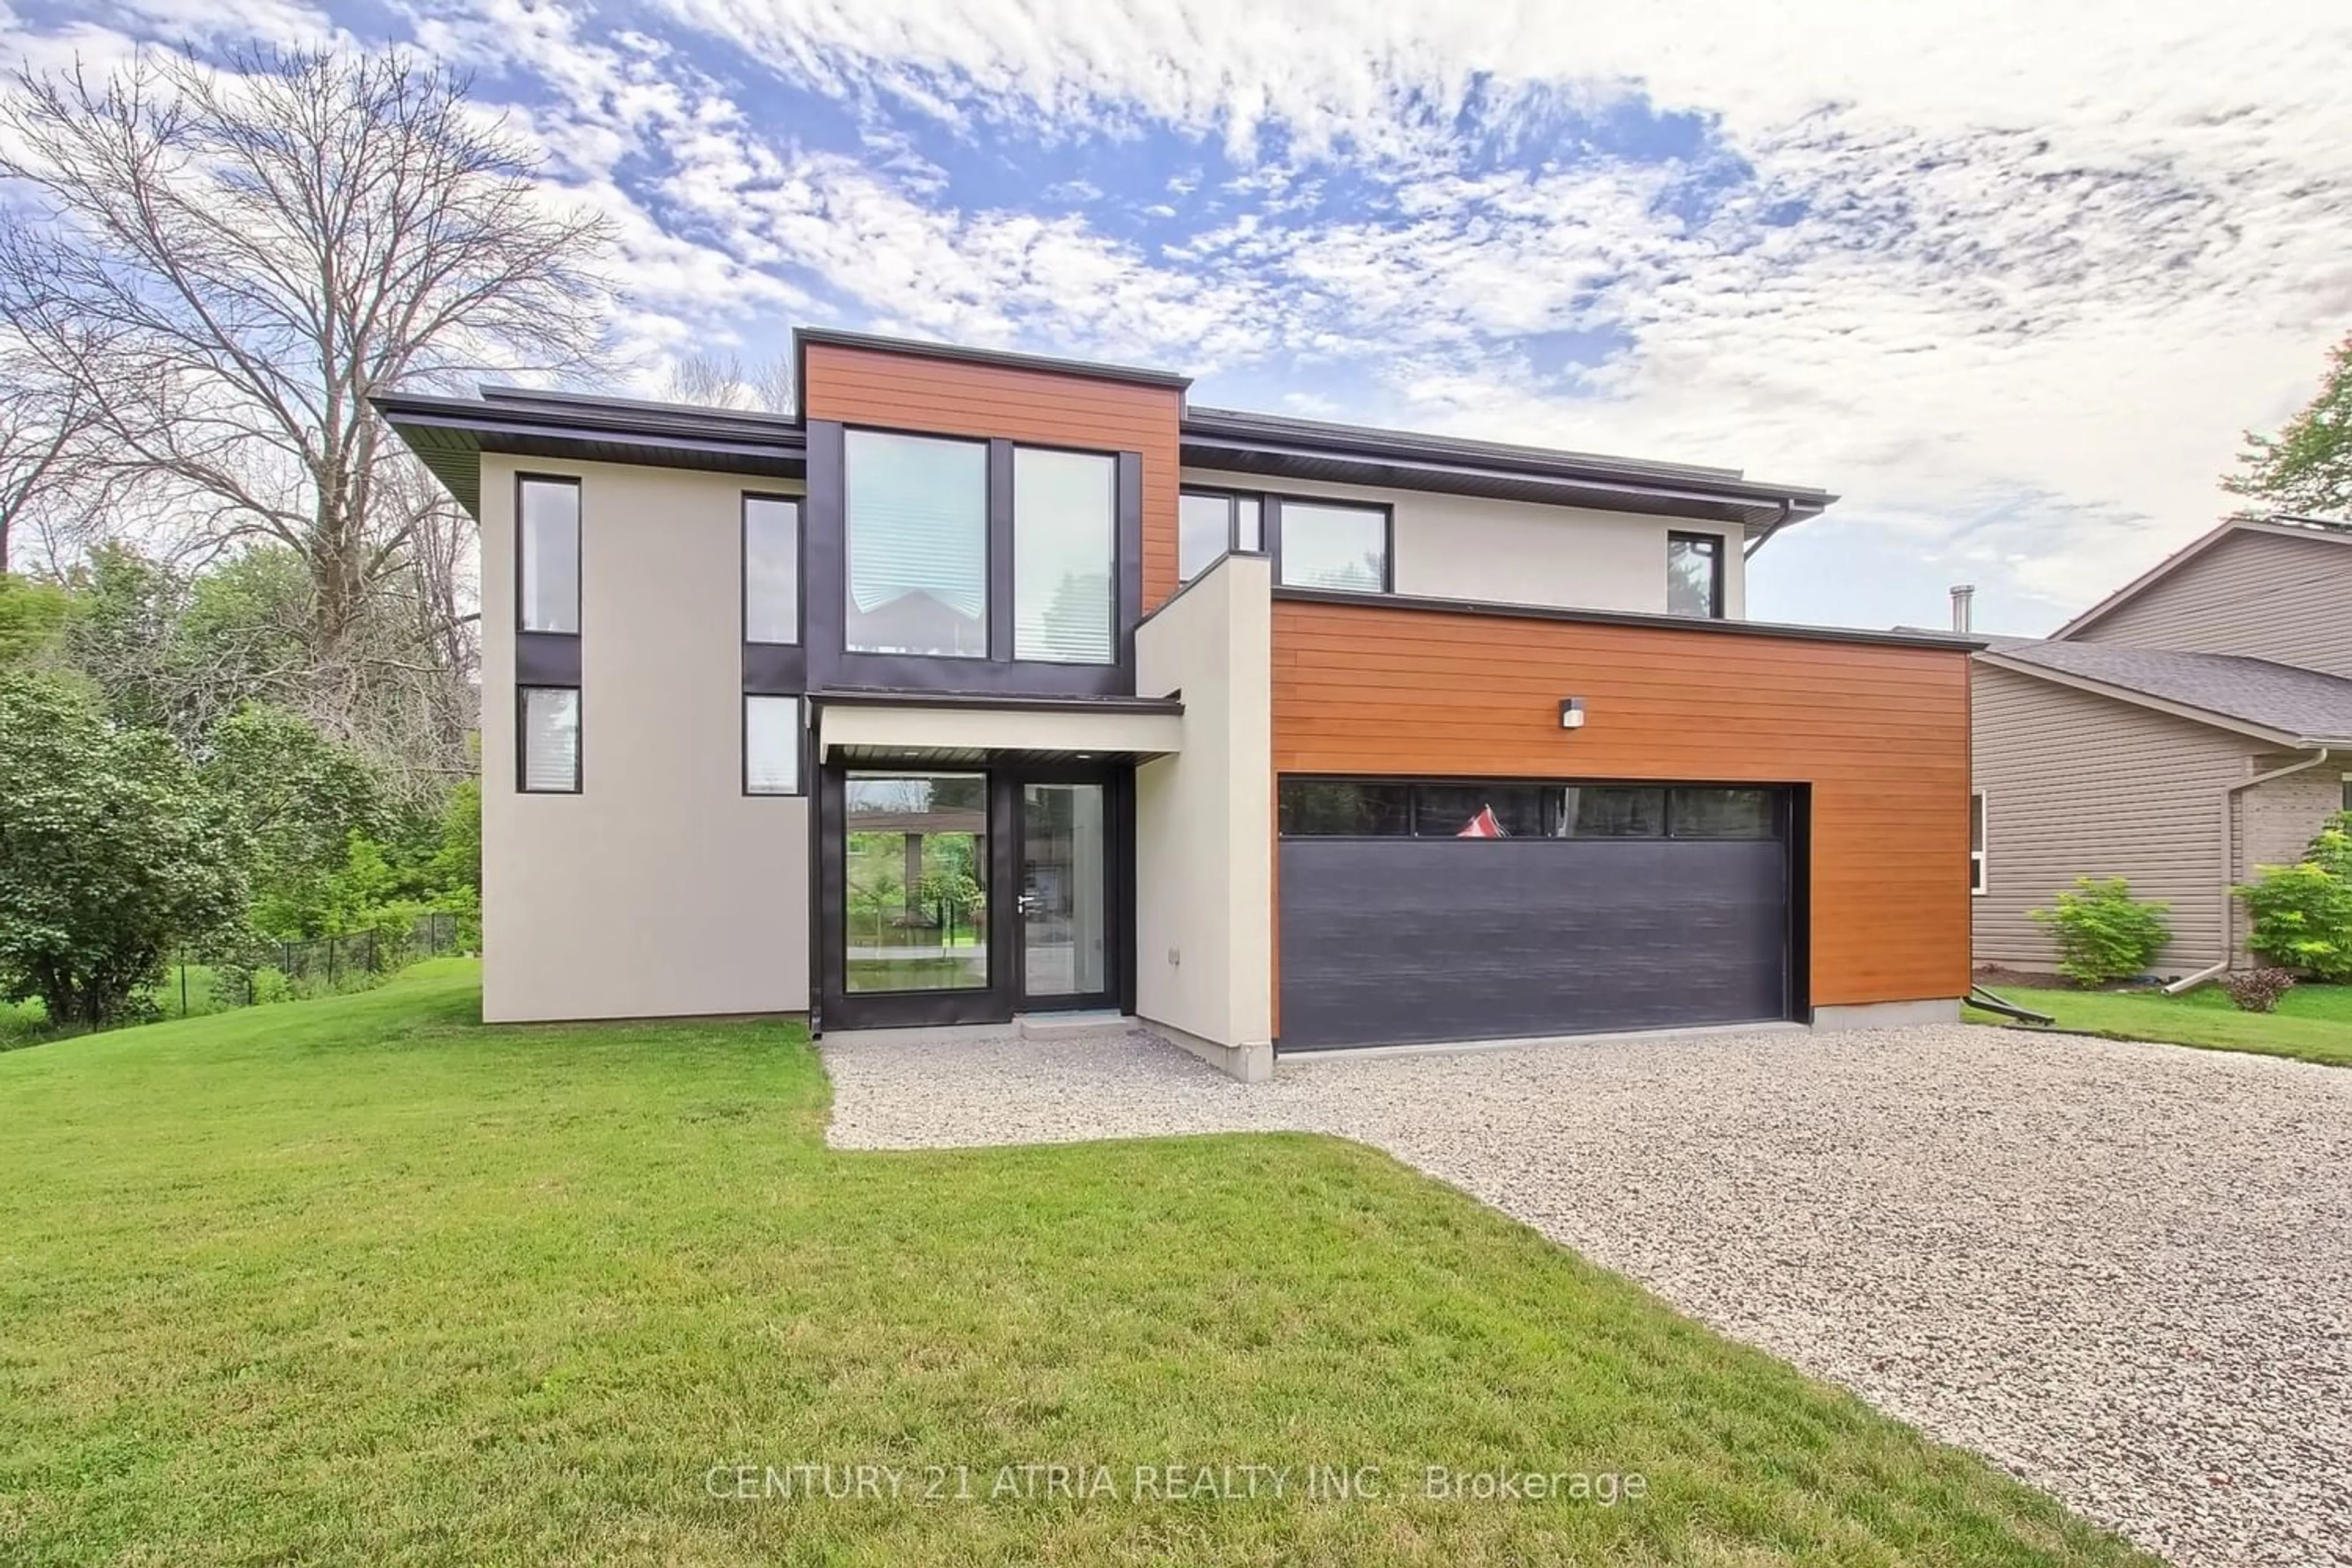 Home with brick exterior material for 149 Virginia Blvd, Georgina Ontario L0E 1R0